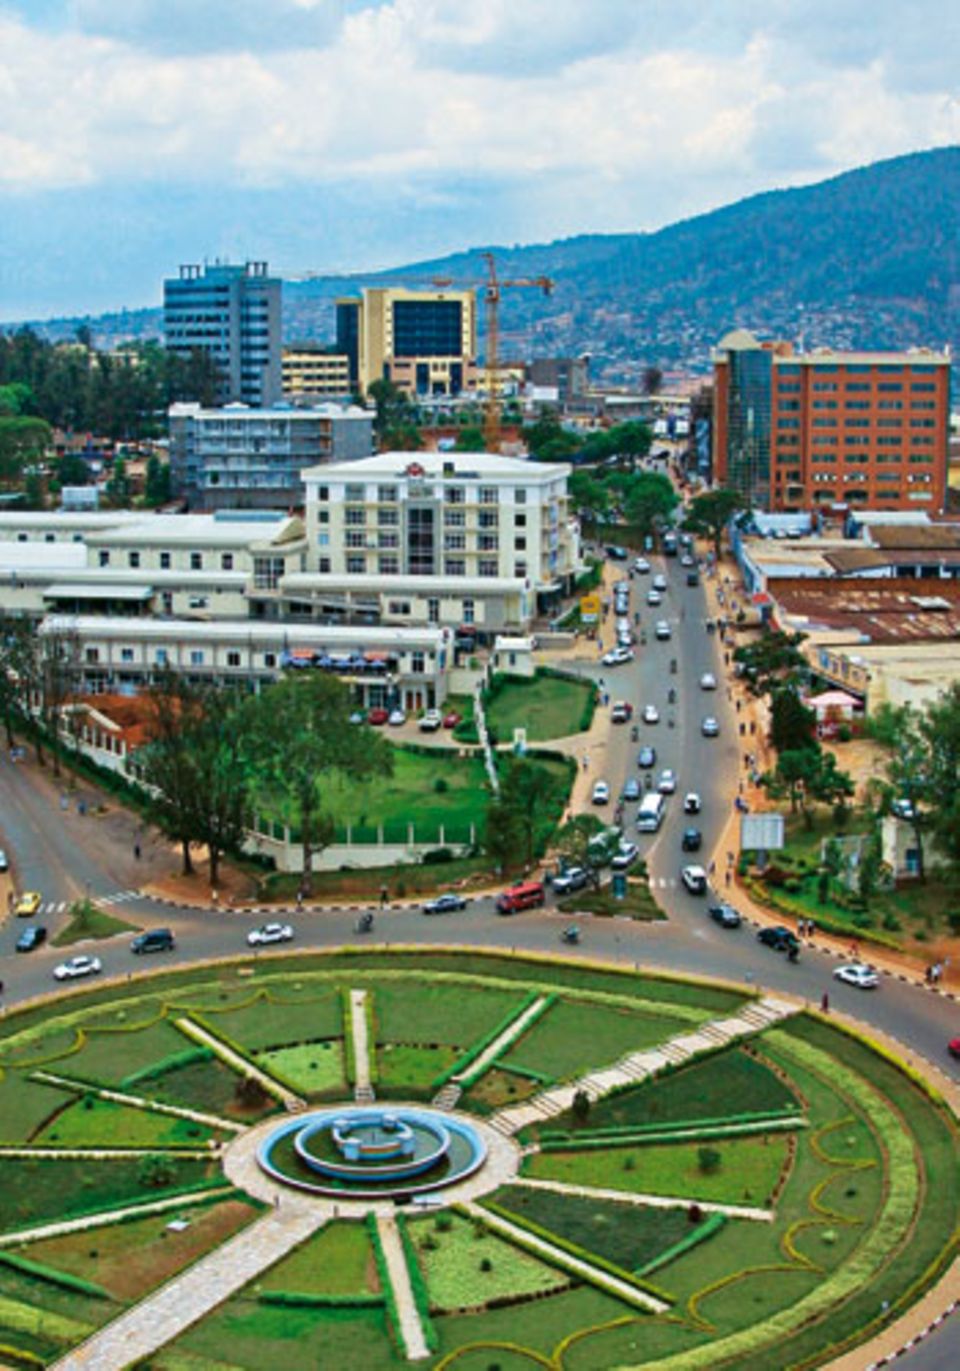 Wolkenkratzer, Shoppingcenter: Die Hauptstadt Kigali ist ein Wirtschaftszentrum in Ostafrika